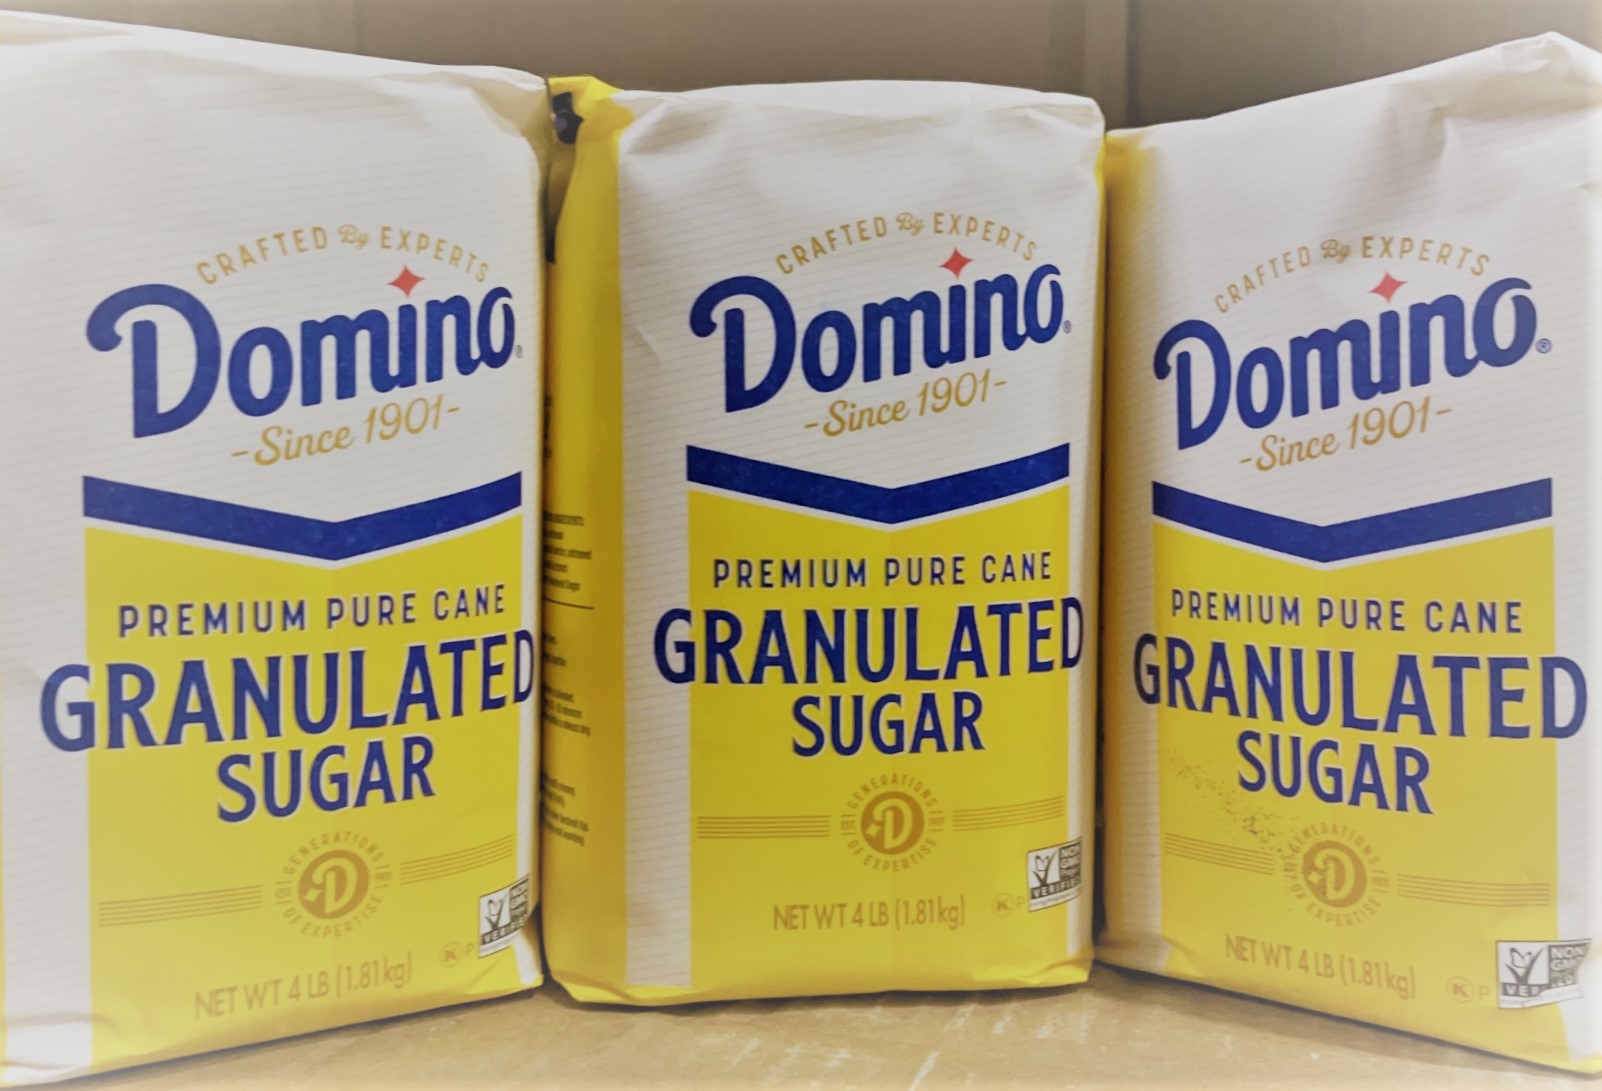 Domino - Granulated Sugar X-Fine 10/4# Small